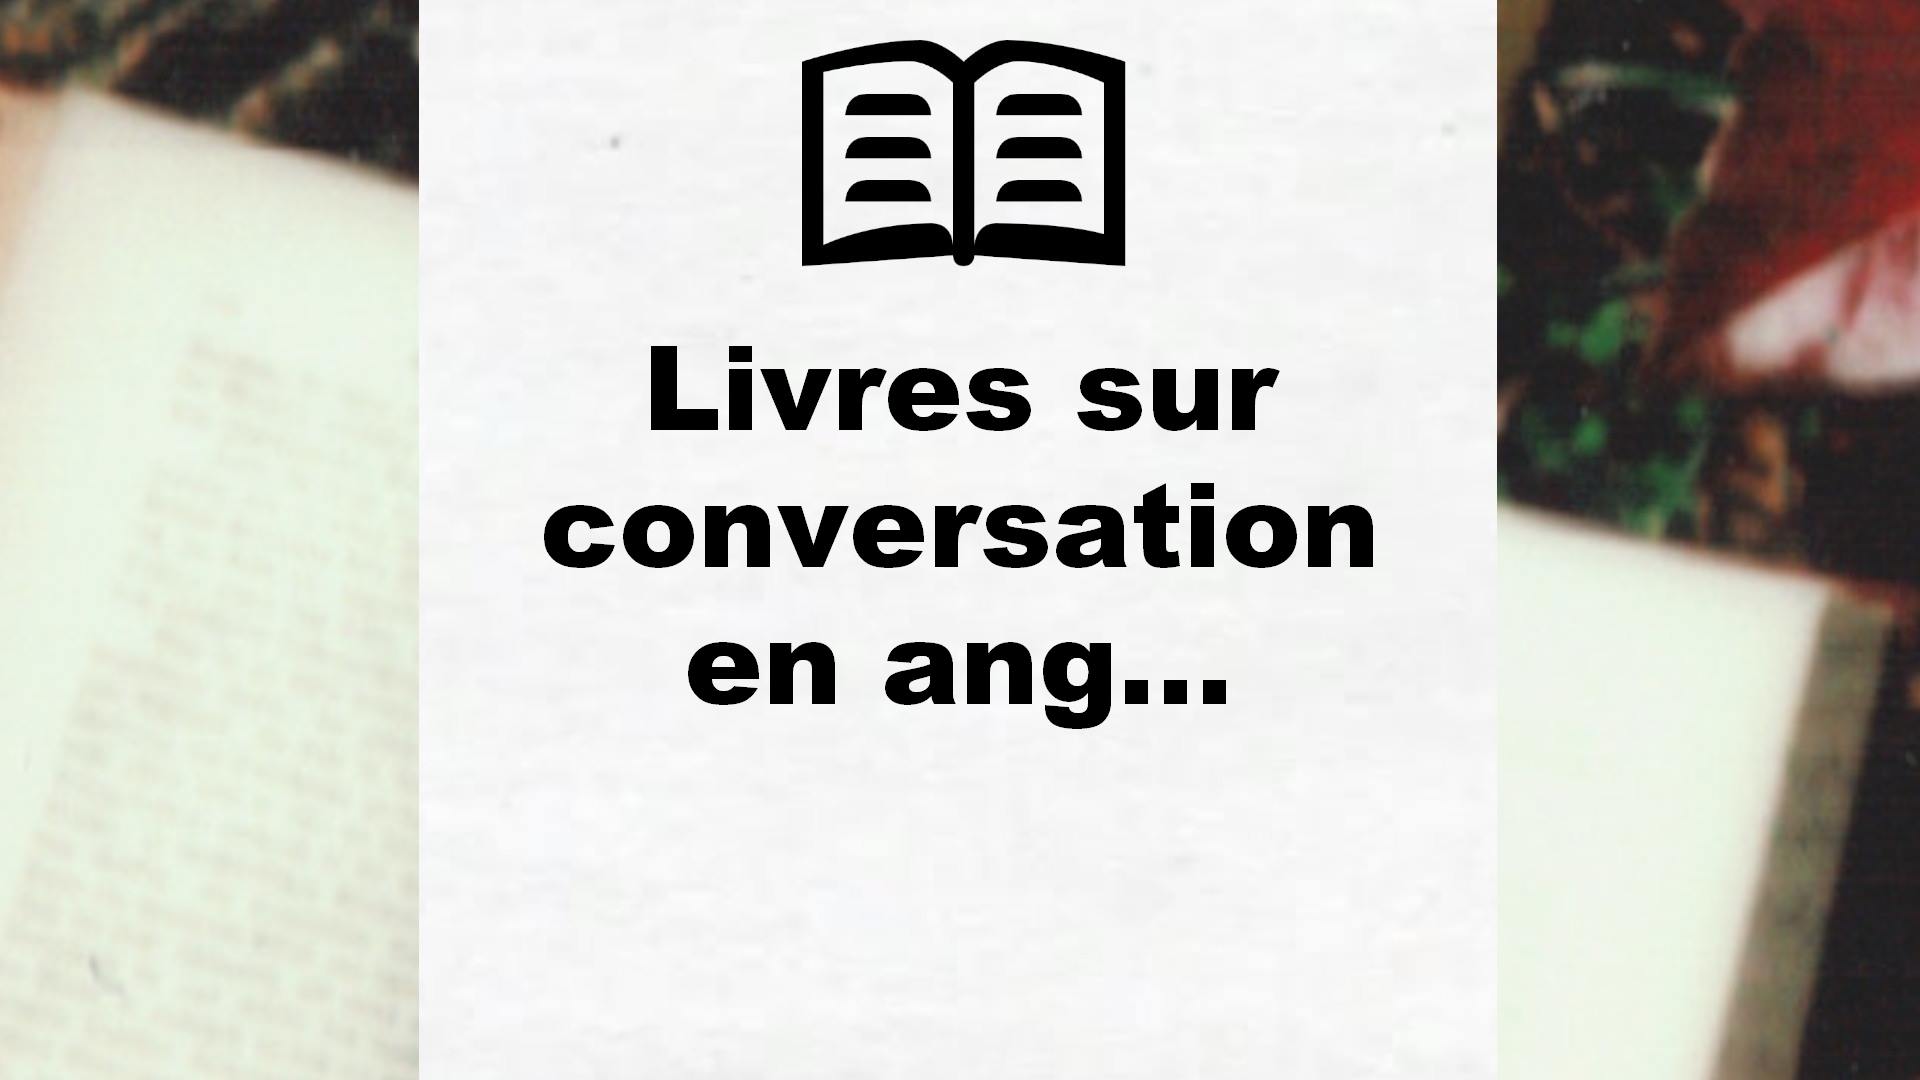 Livres sur conversation en anglais